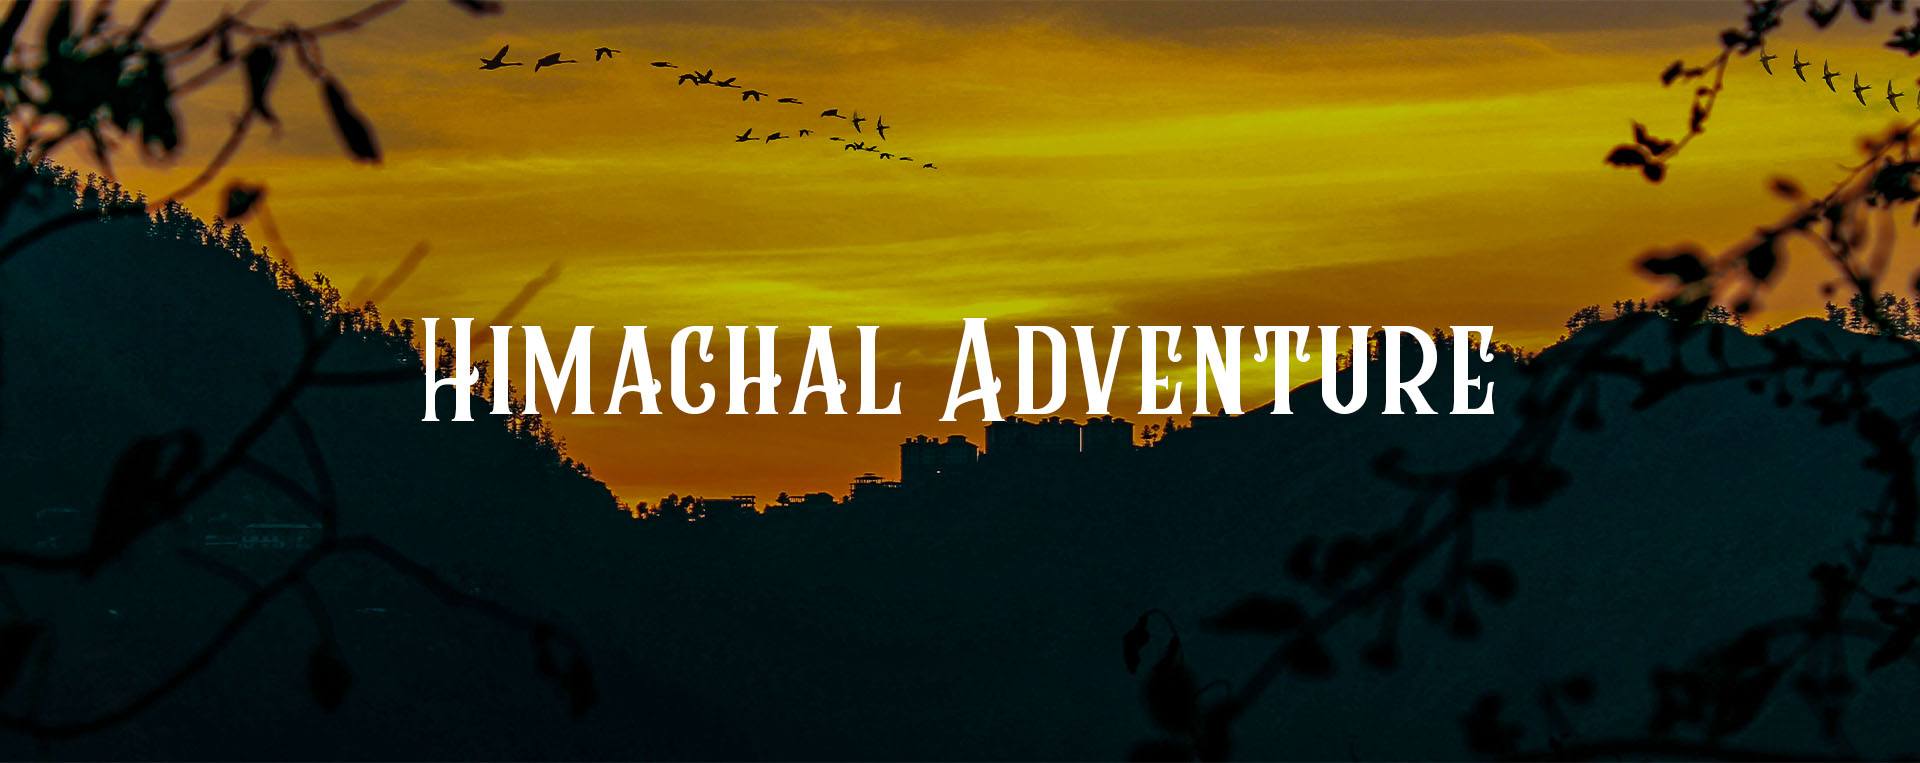 himachal-adventure